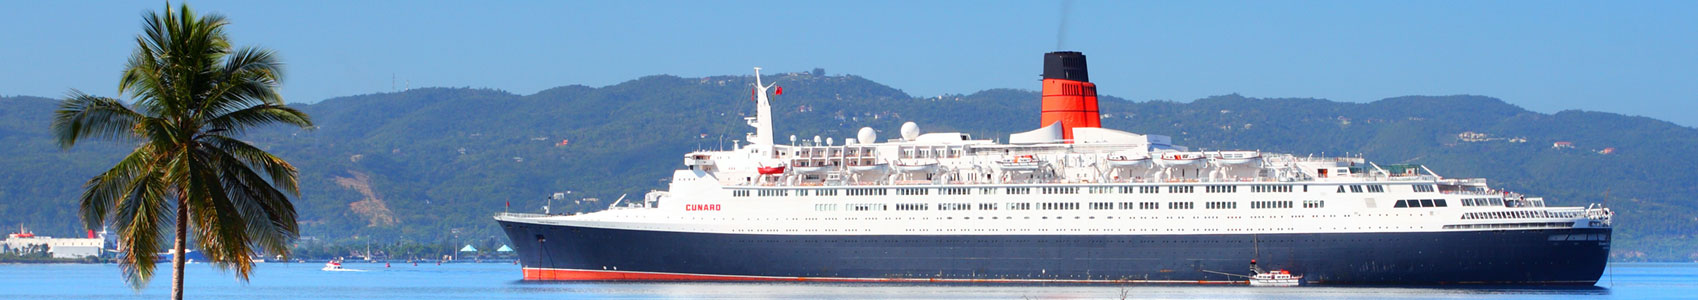 Montego Bay Cruise Ship Pier